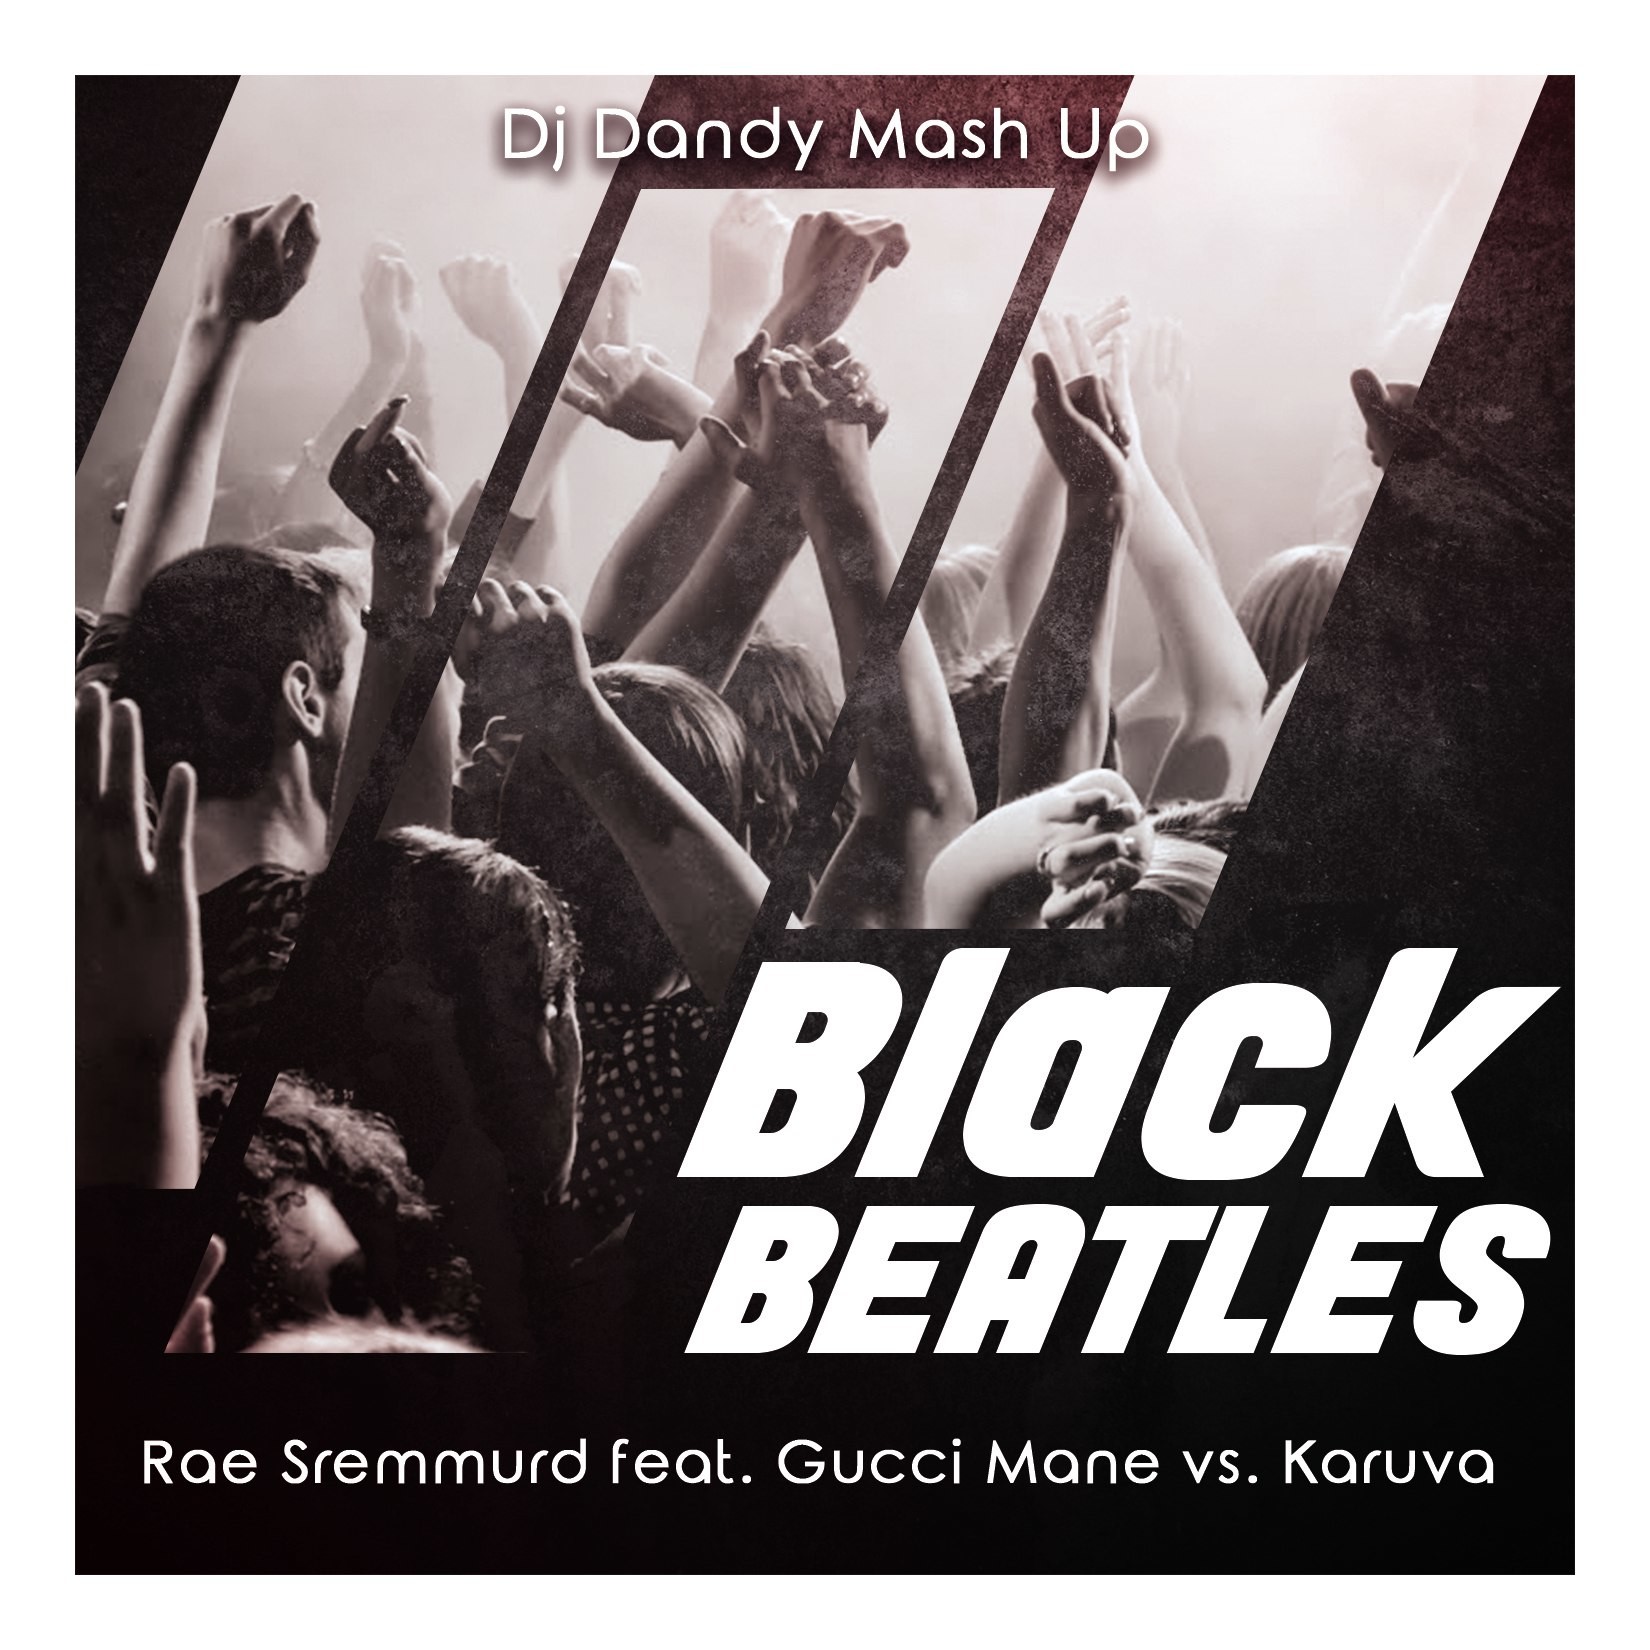 Rae sremmurd ft gucci mane black beatles download free